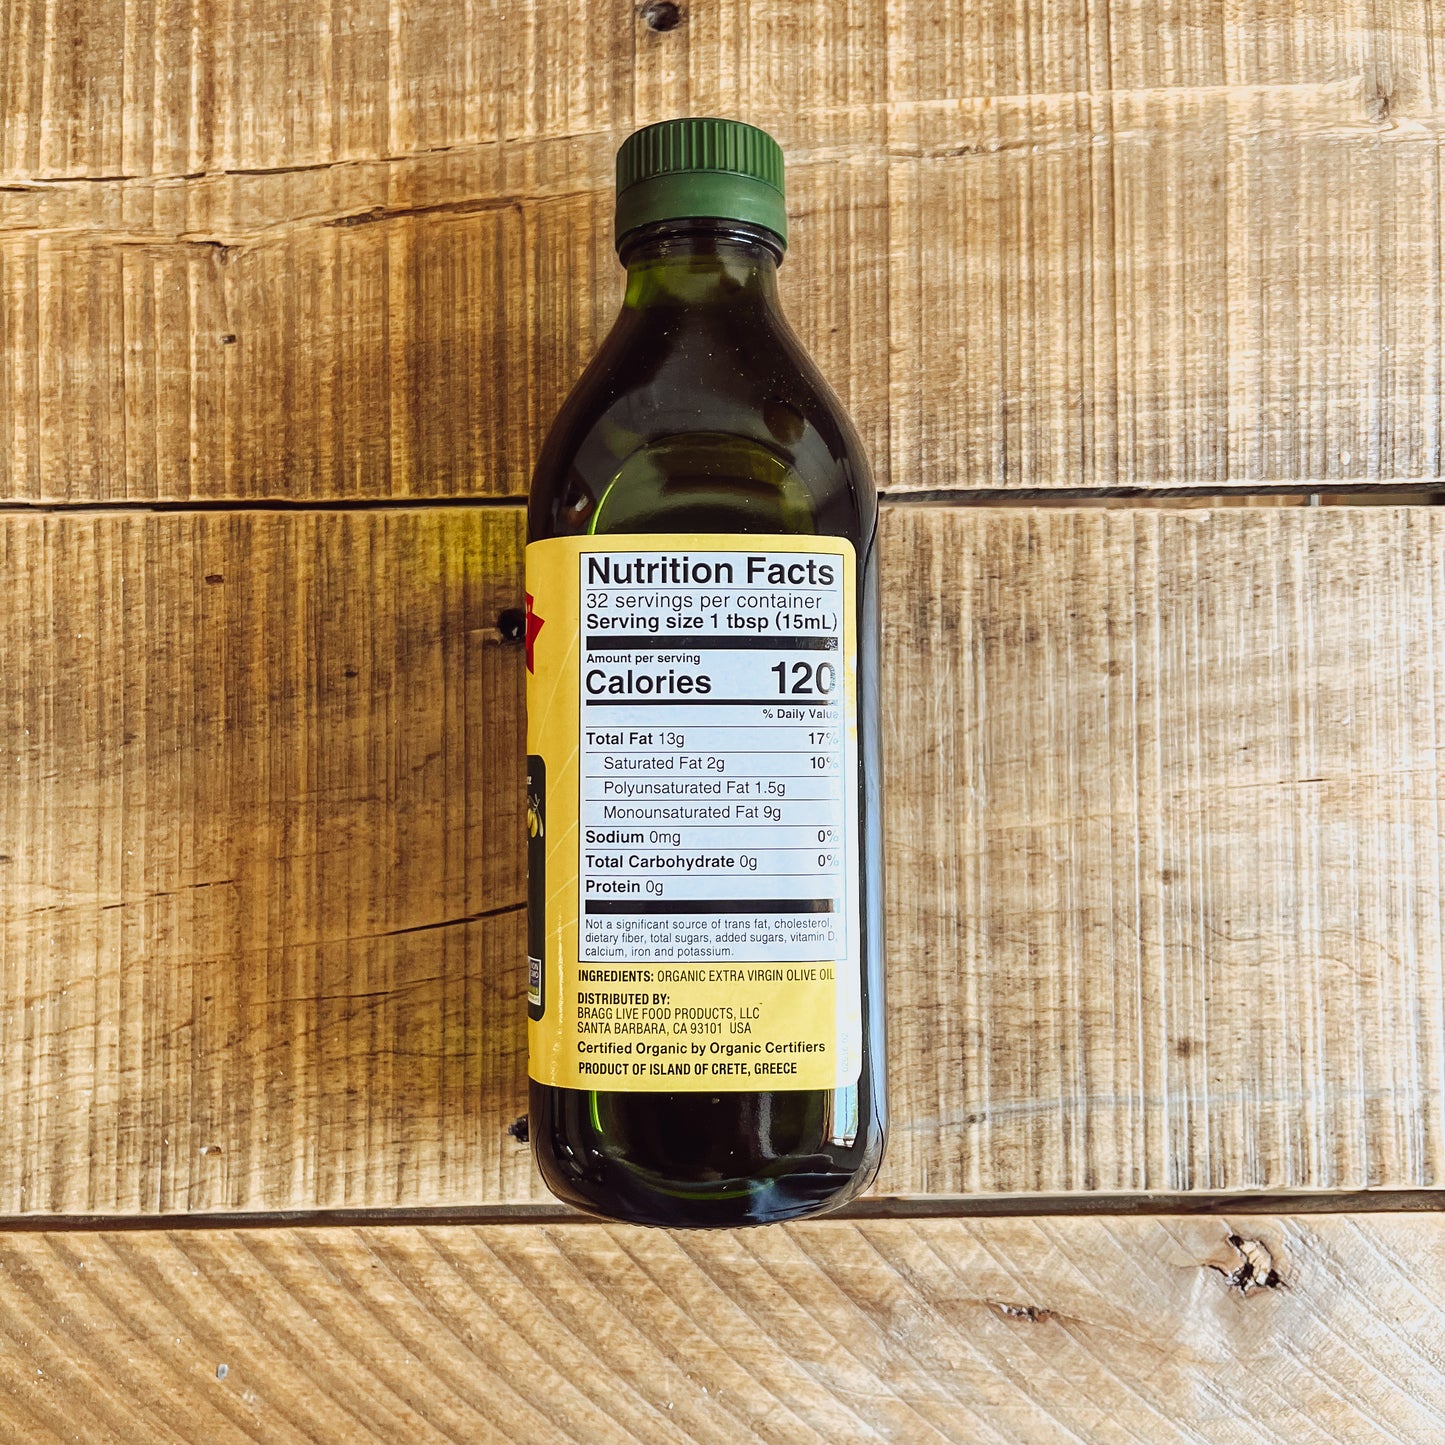 Bragg's Organic Extra Virgin Olive Oil - Glass bottle